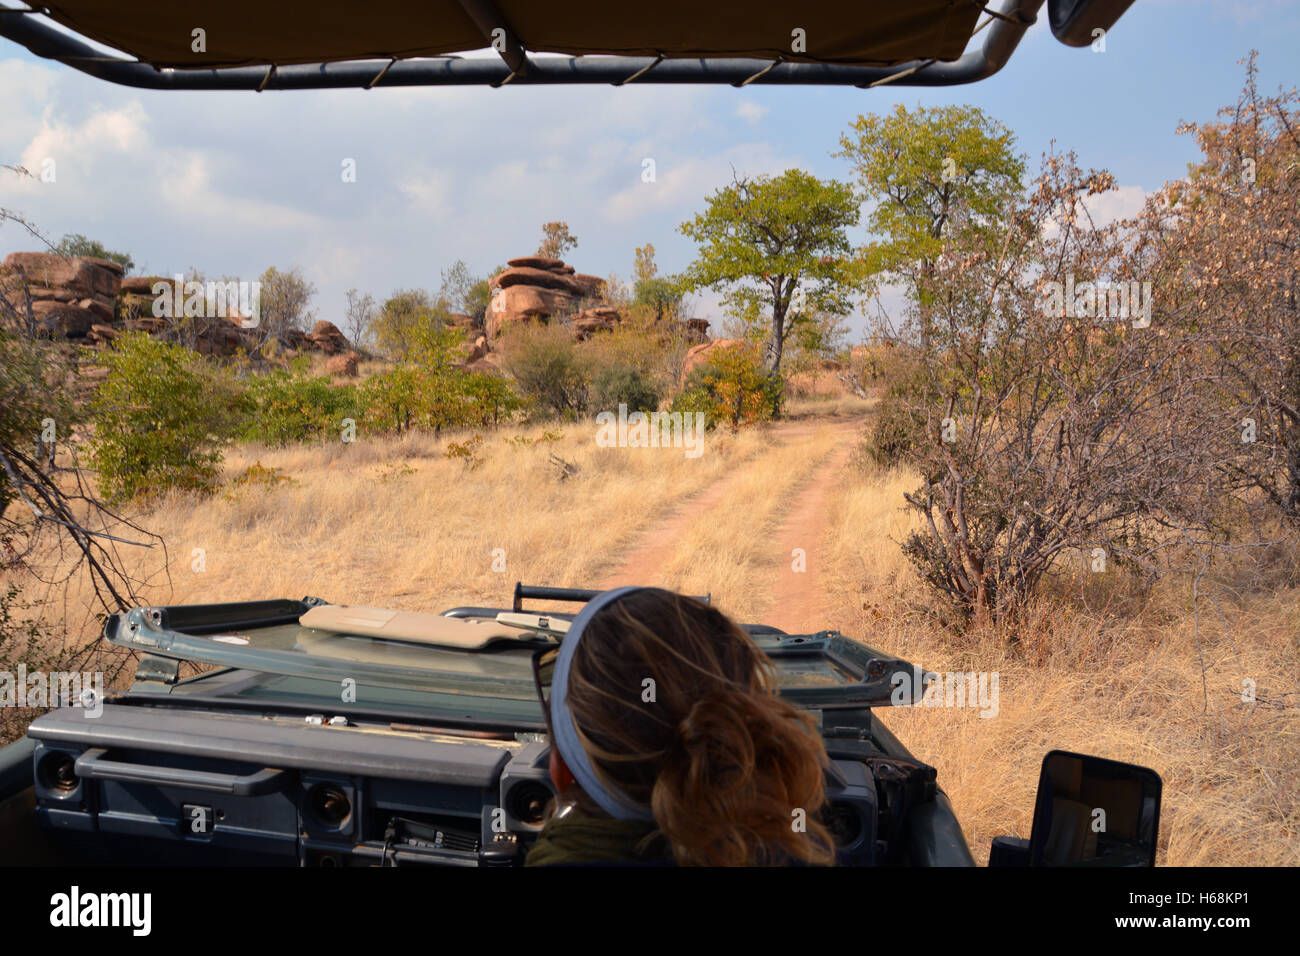 A manovre di guida la sua jeep safari passato formazioni kopje nella boccola del Botswana Tuli del deserto regione. Foto Stock